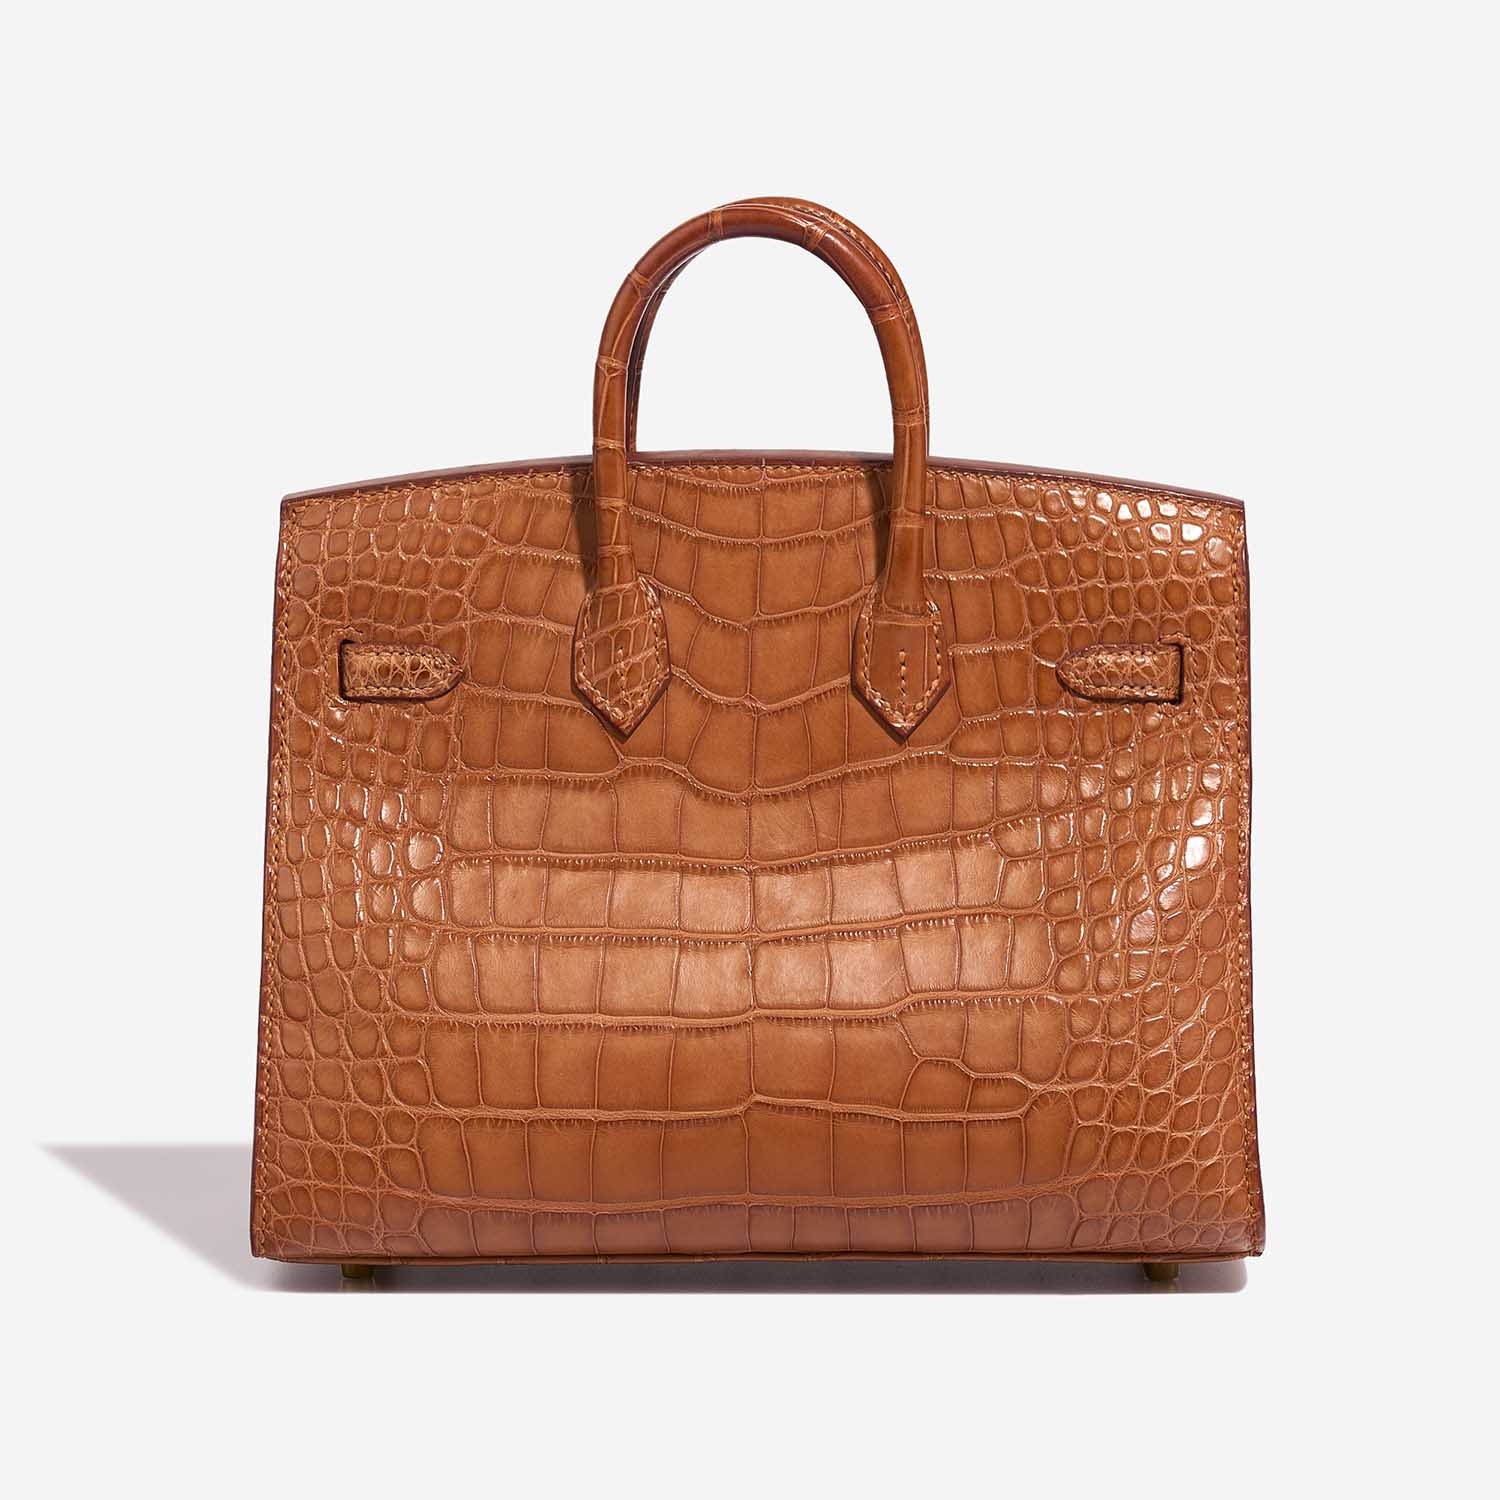 Hermès Birkin 20 Gold Back | Verkaufen Sie Ihre Designertasche auf Saclab.com